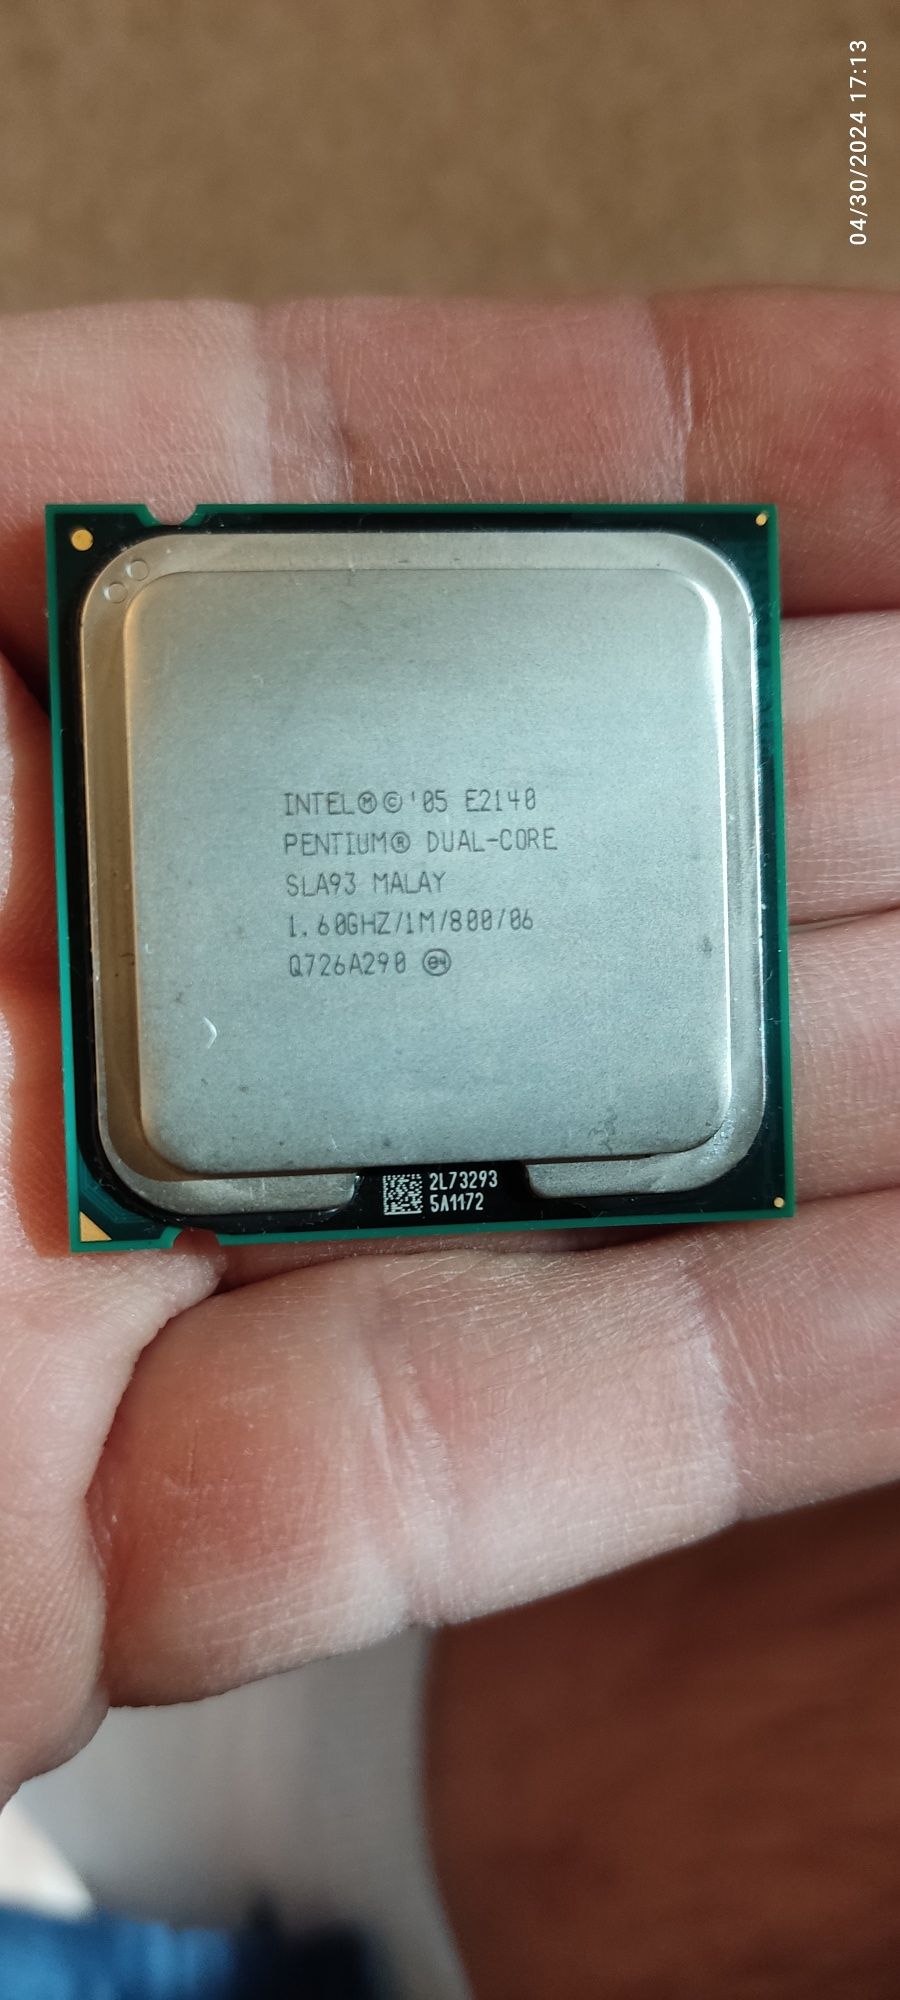 Intel Pentium Processor E2140
1M Cache, 1.60 GHz, 800 MHz FSB